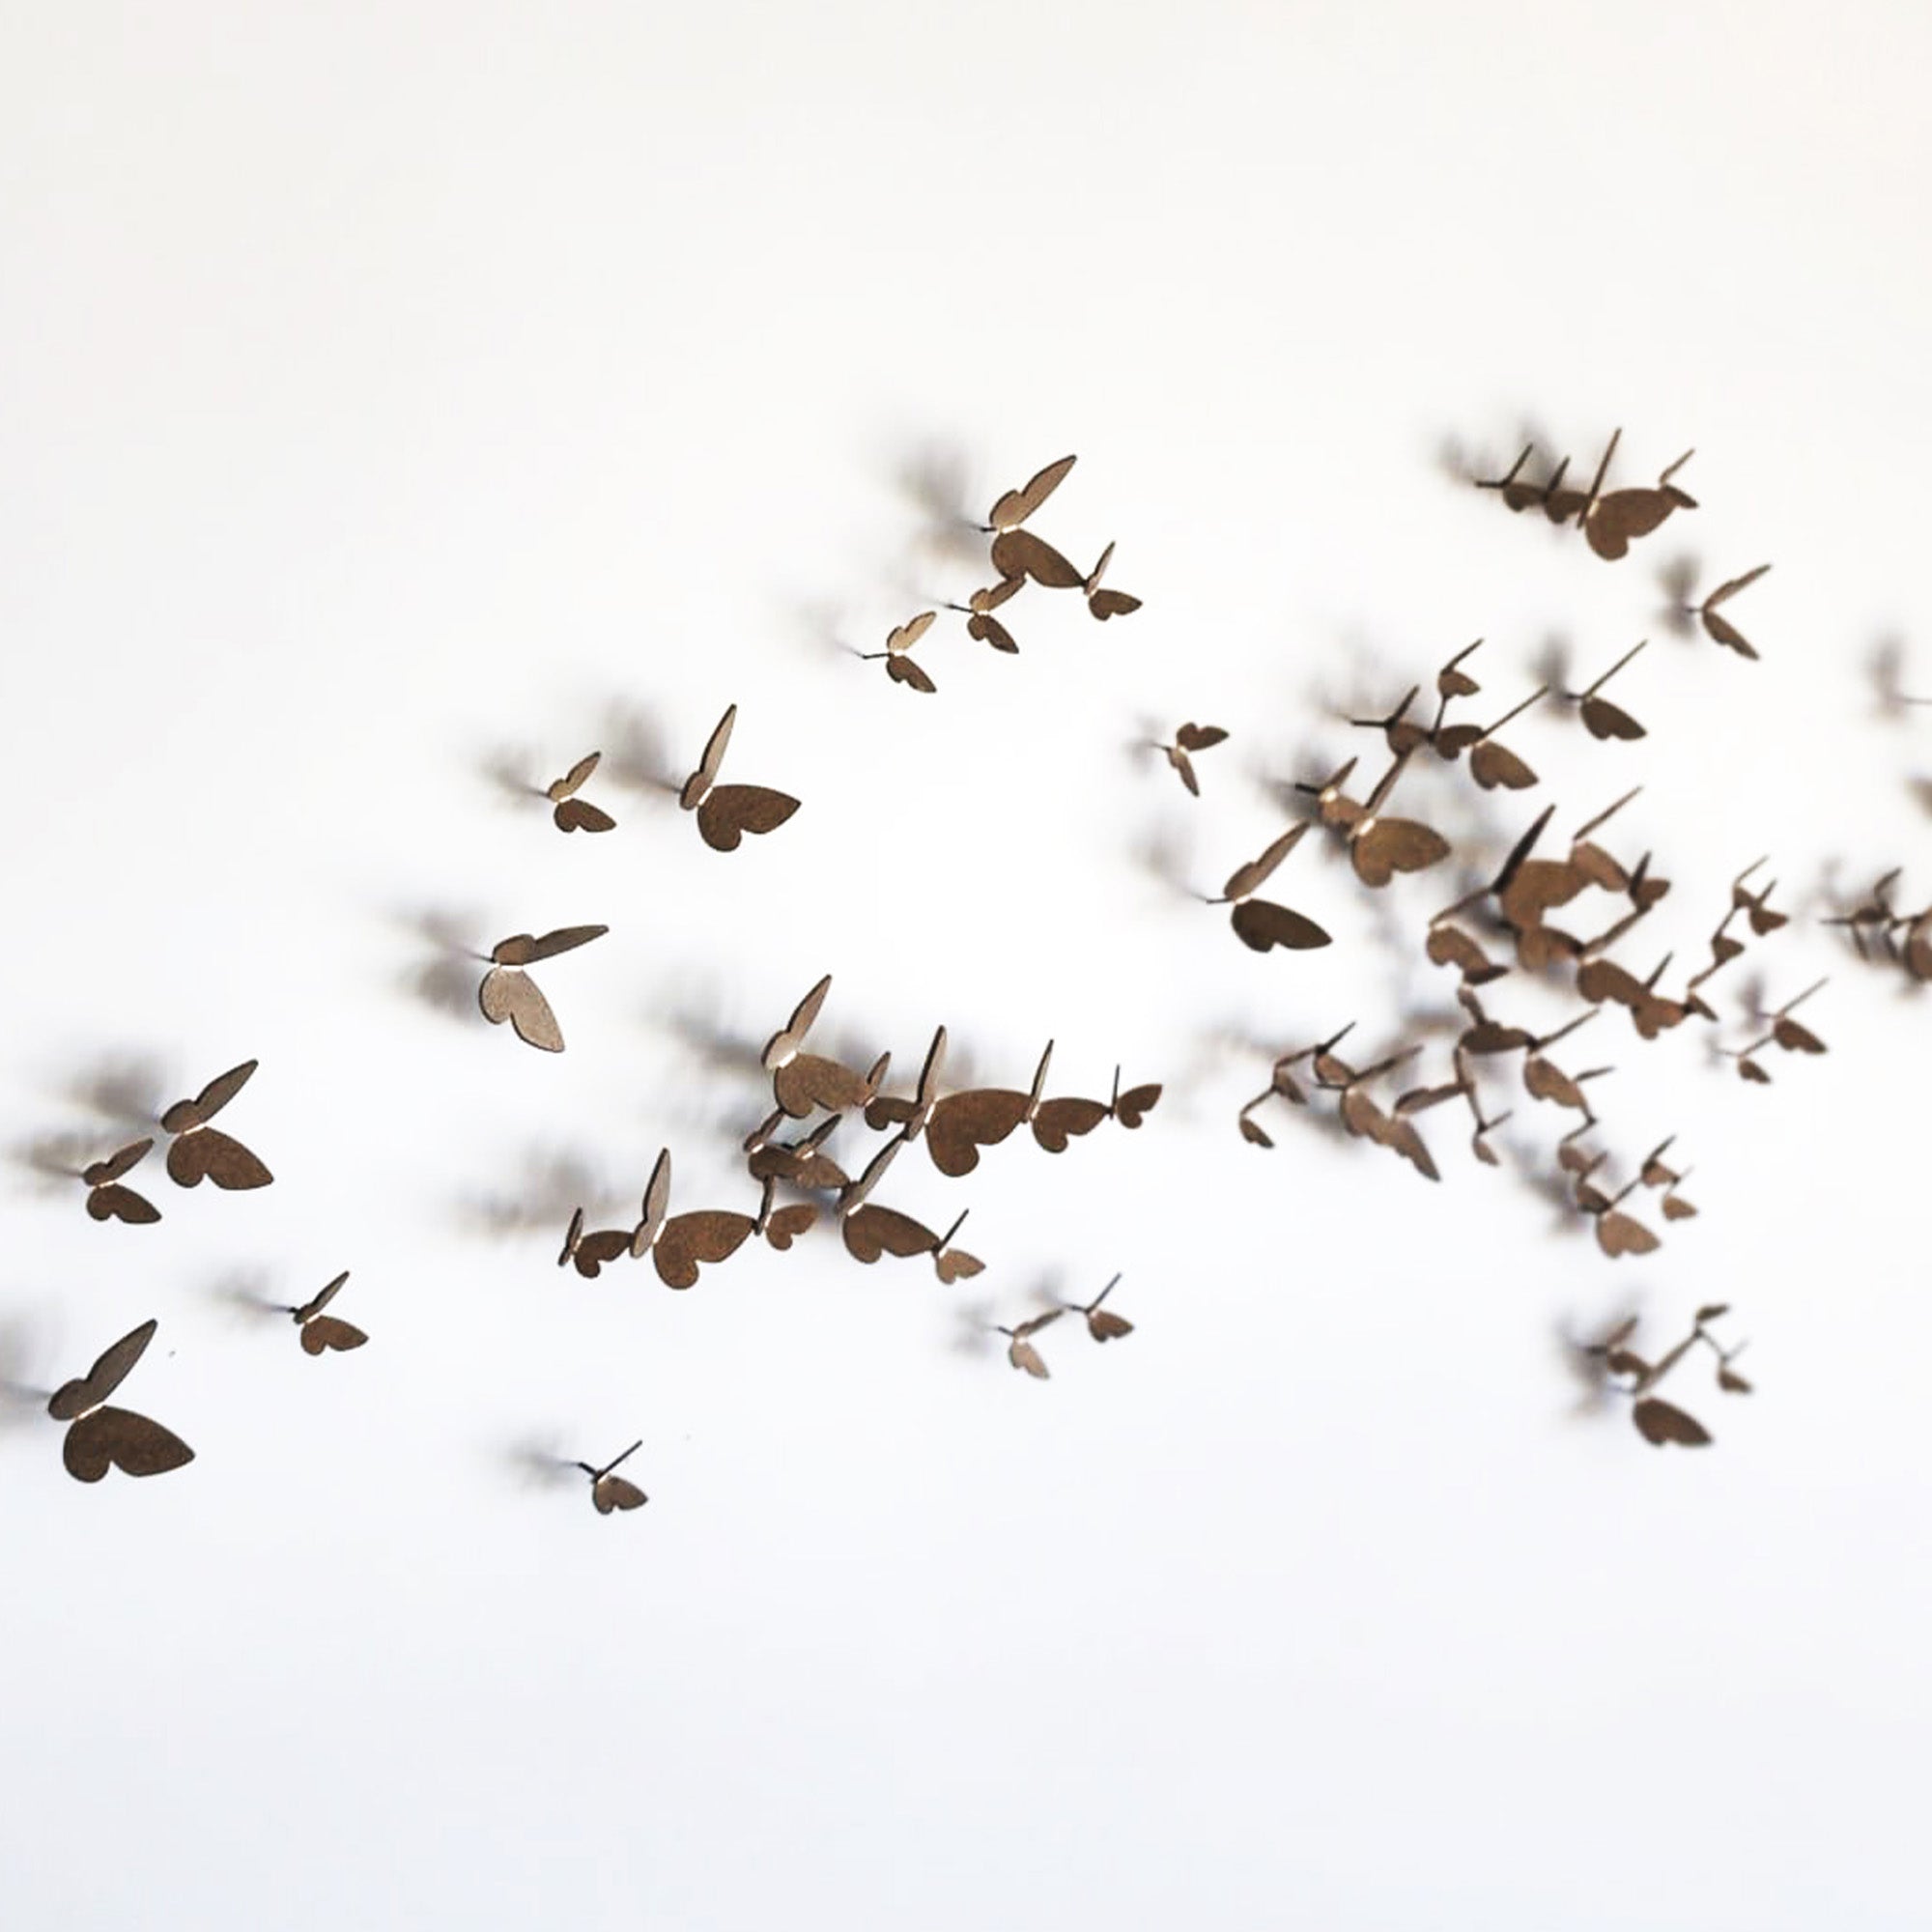 Butterfly Wall Sculpture - Horizontal Flights